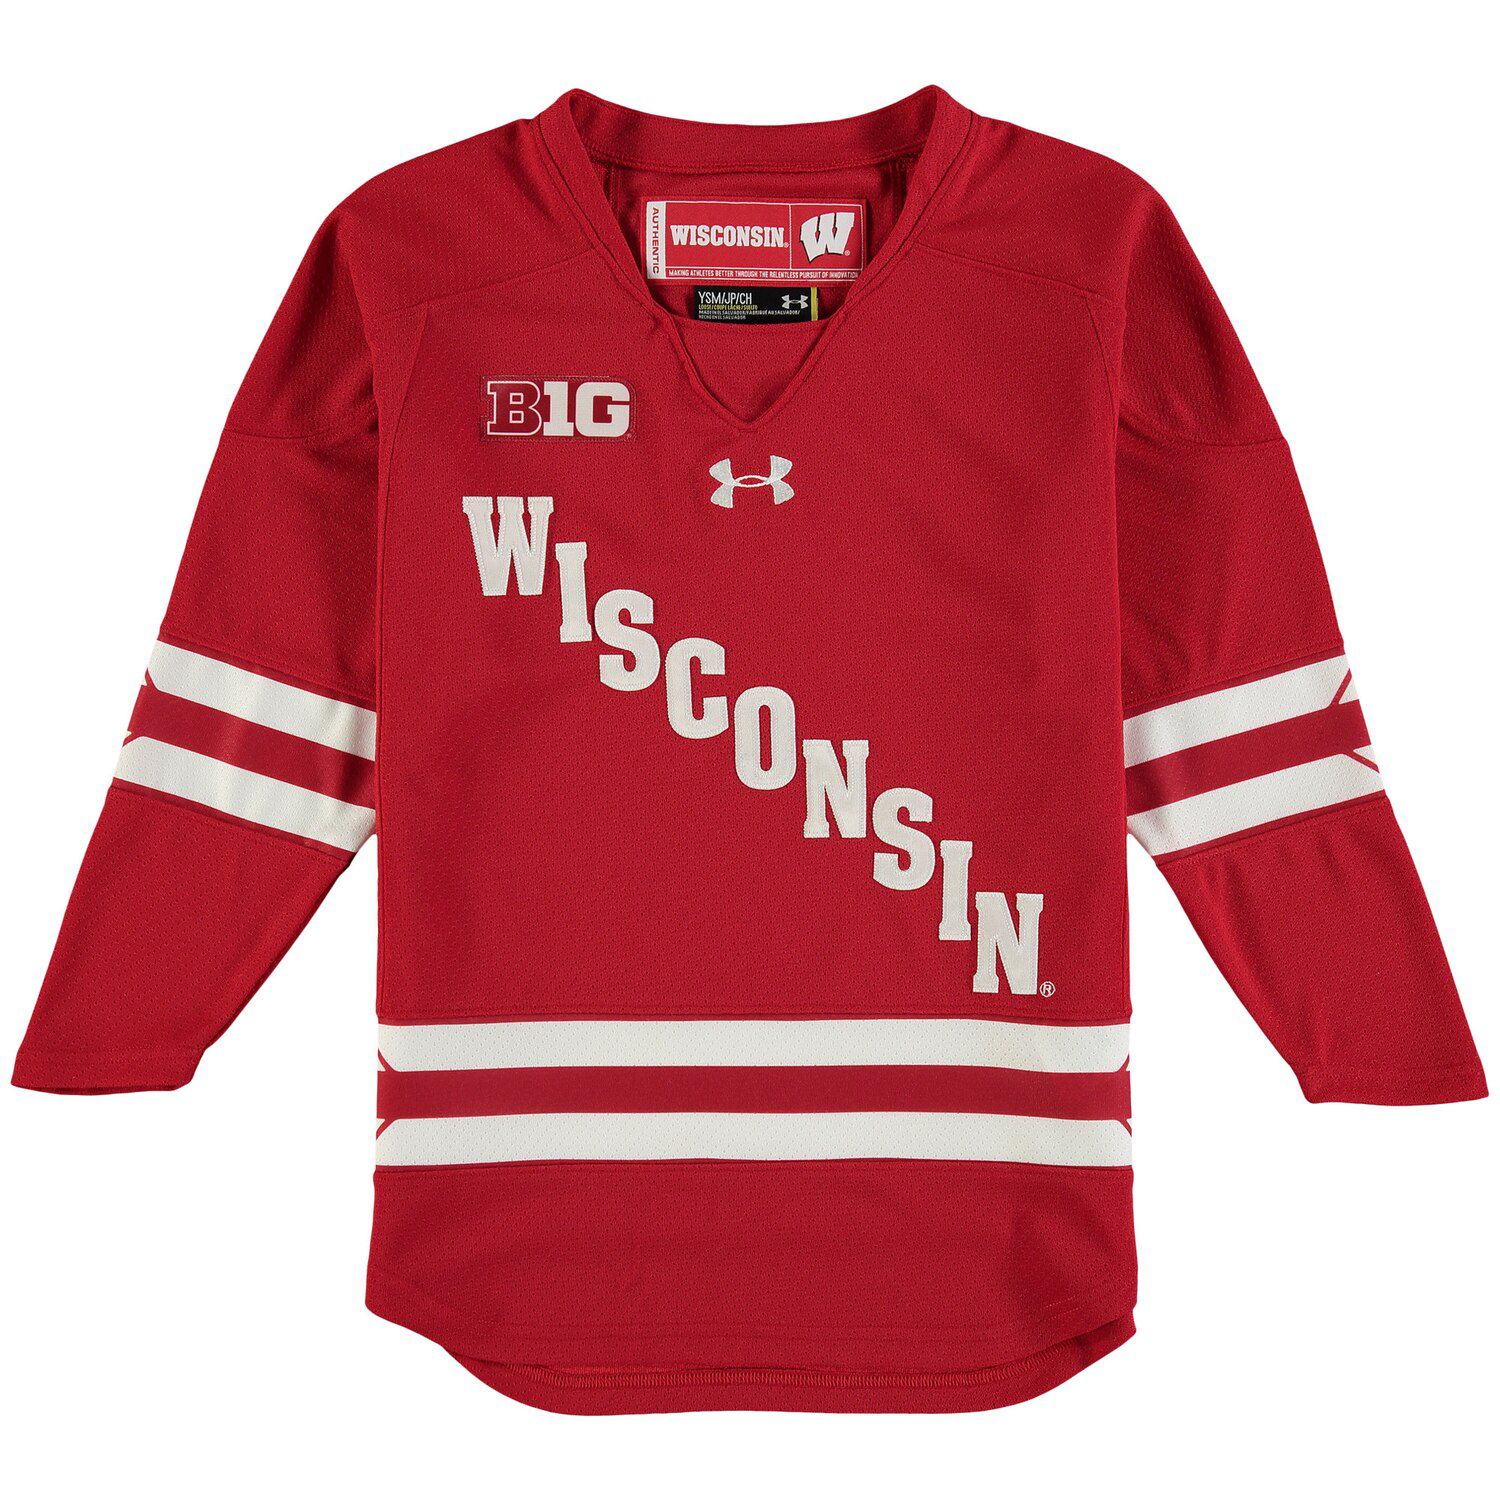 wisconsin hockey jerseys